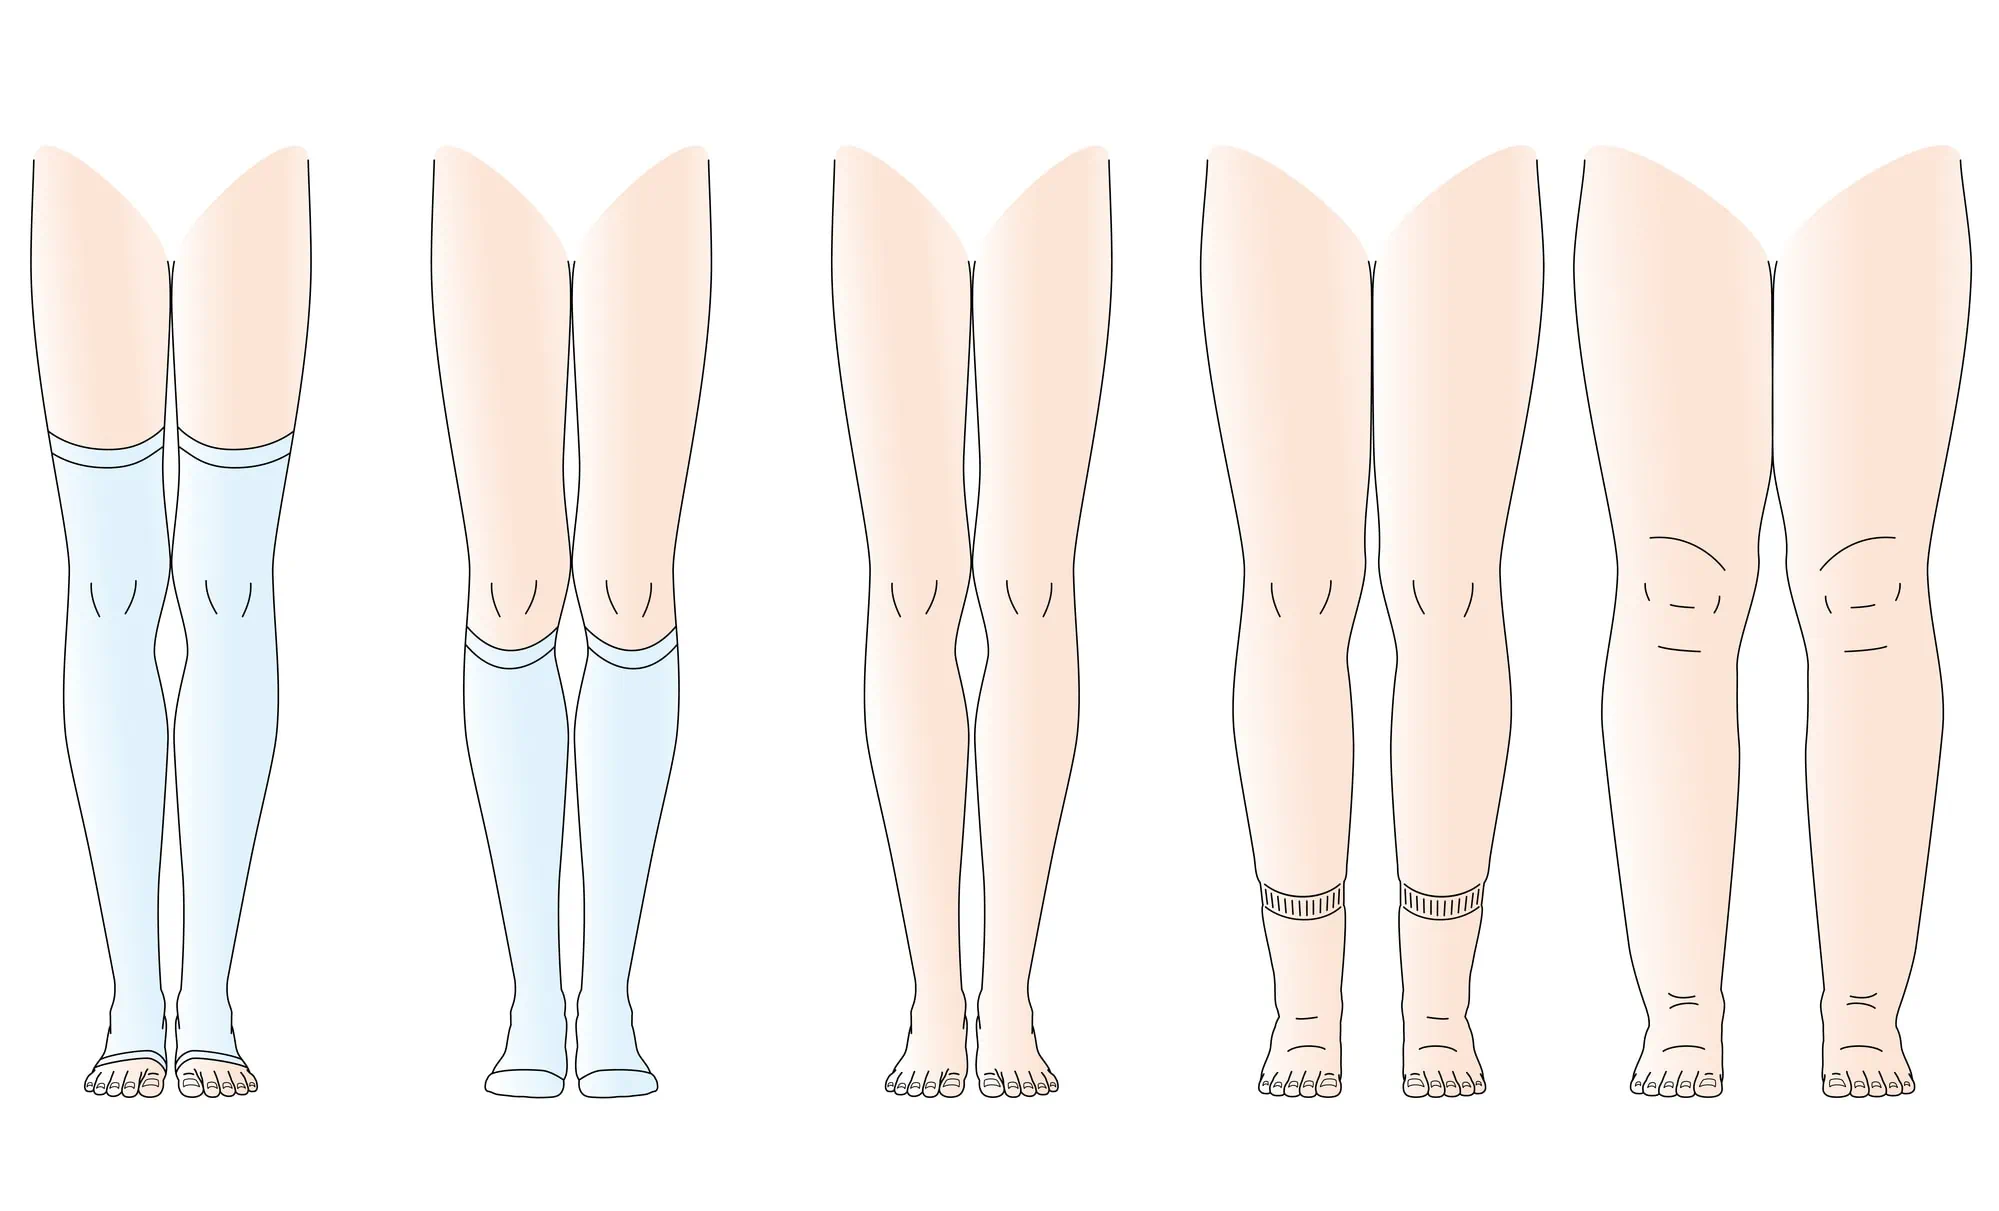 Meias de compressão – as meias ajudam a diminuir a pressão da gravidade